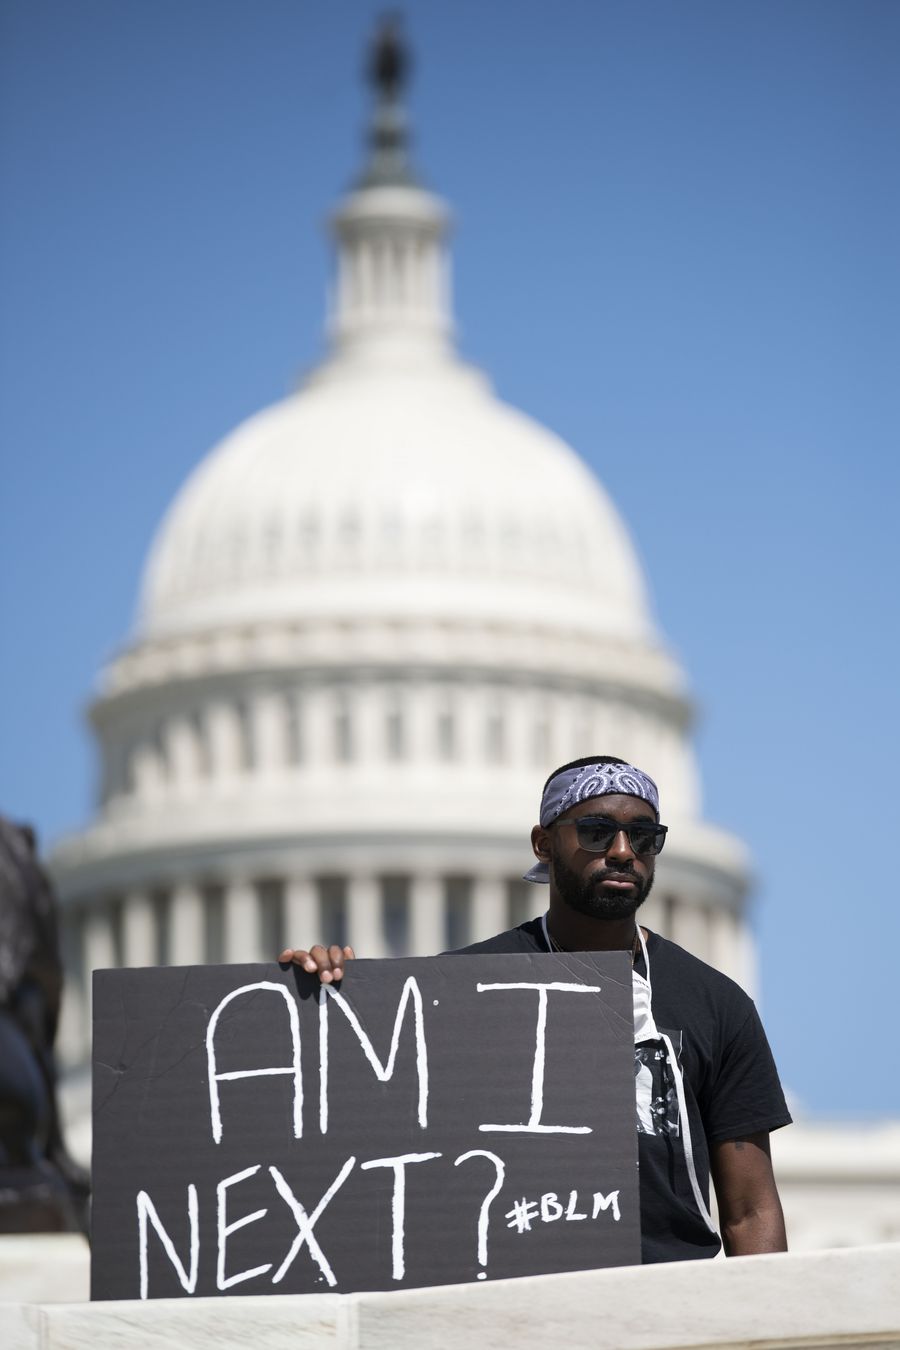  إعلان حظر التجول في واشنطن بعد احتجاجات بالقرب من البيت الأبيض